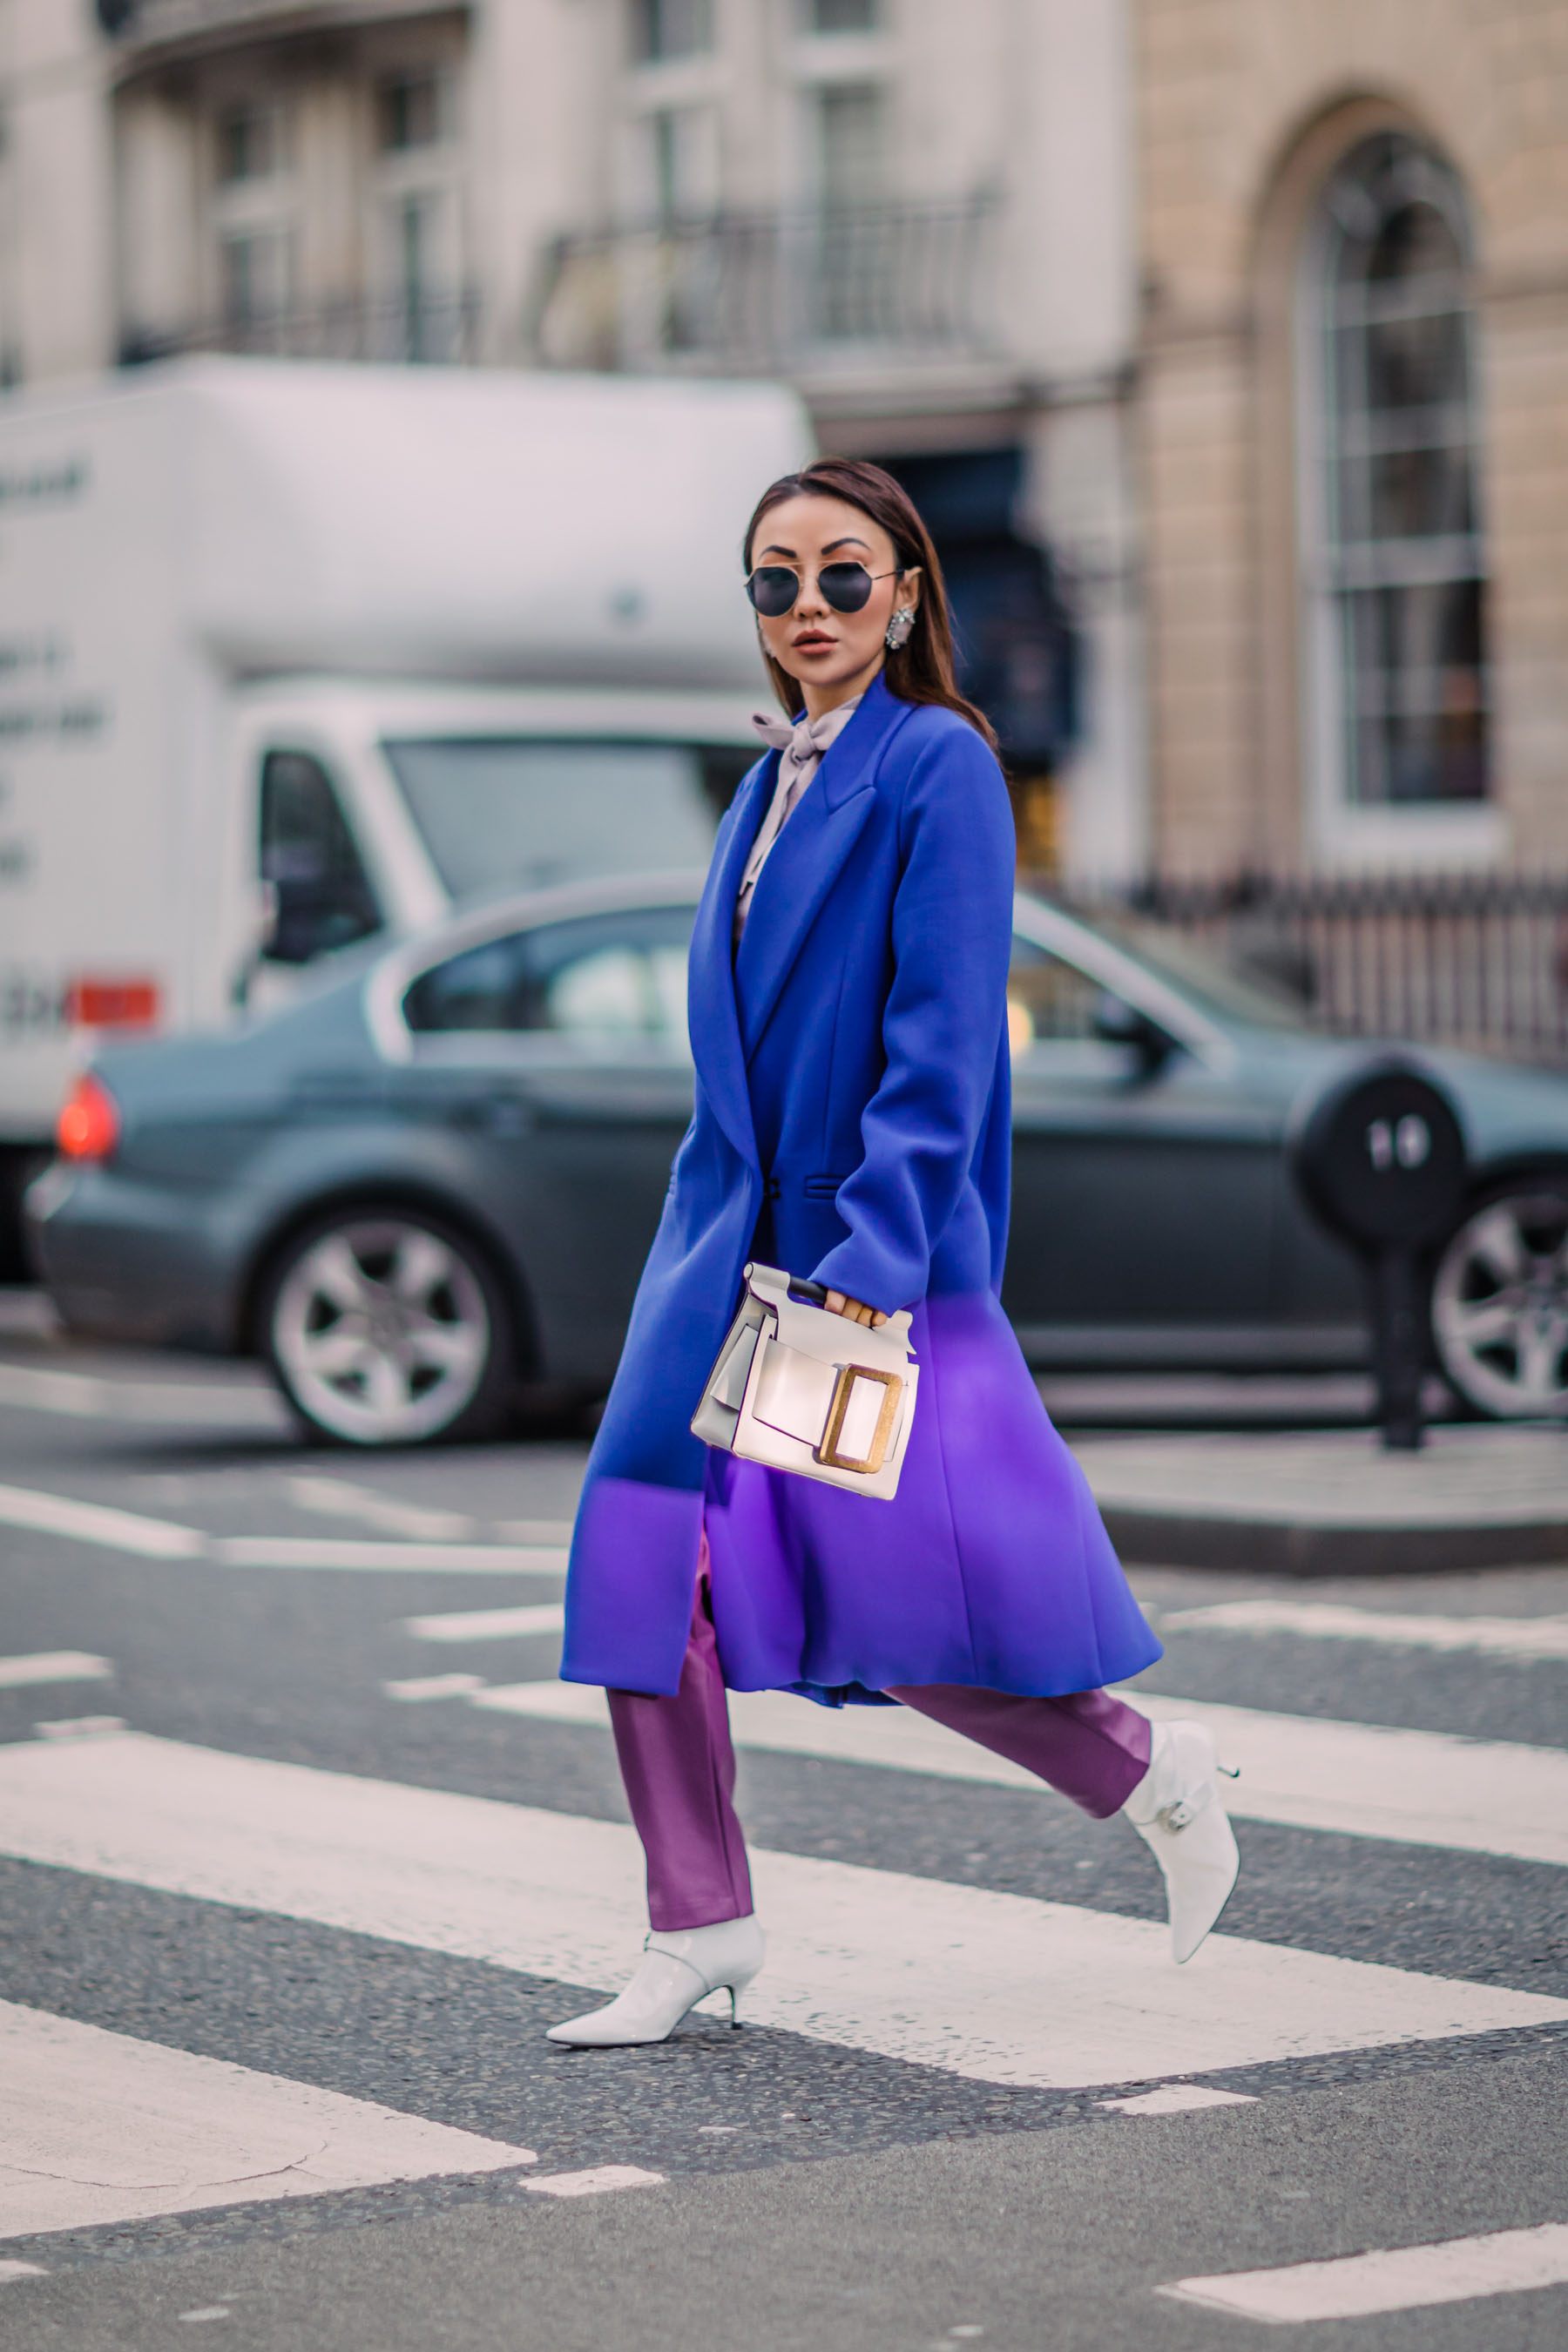 London Fashion Week Recap 2 - blue coat, white boots, purple pants, bold colors outfit // Notjessfashion.com